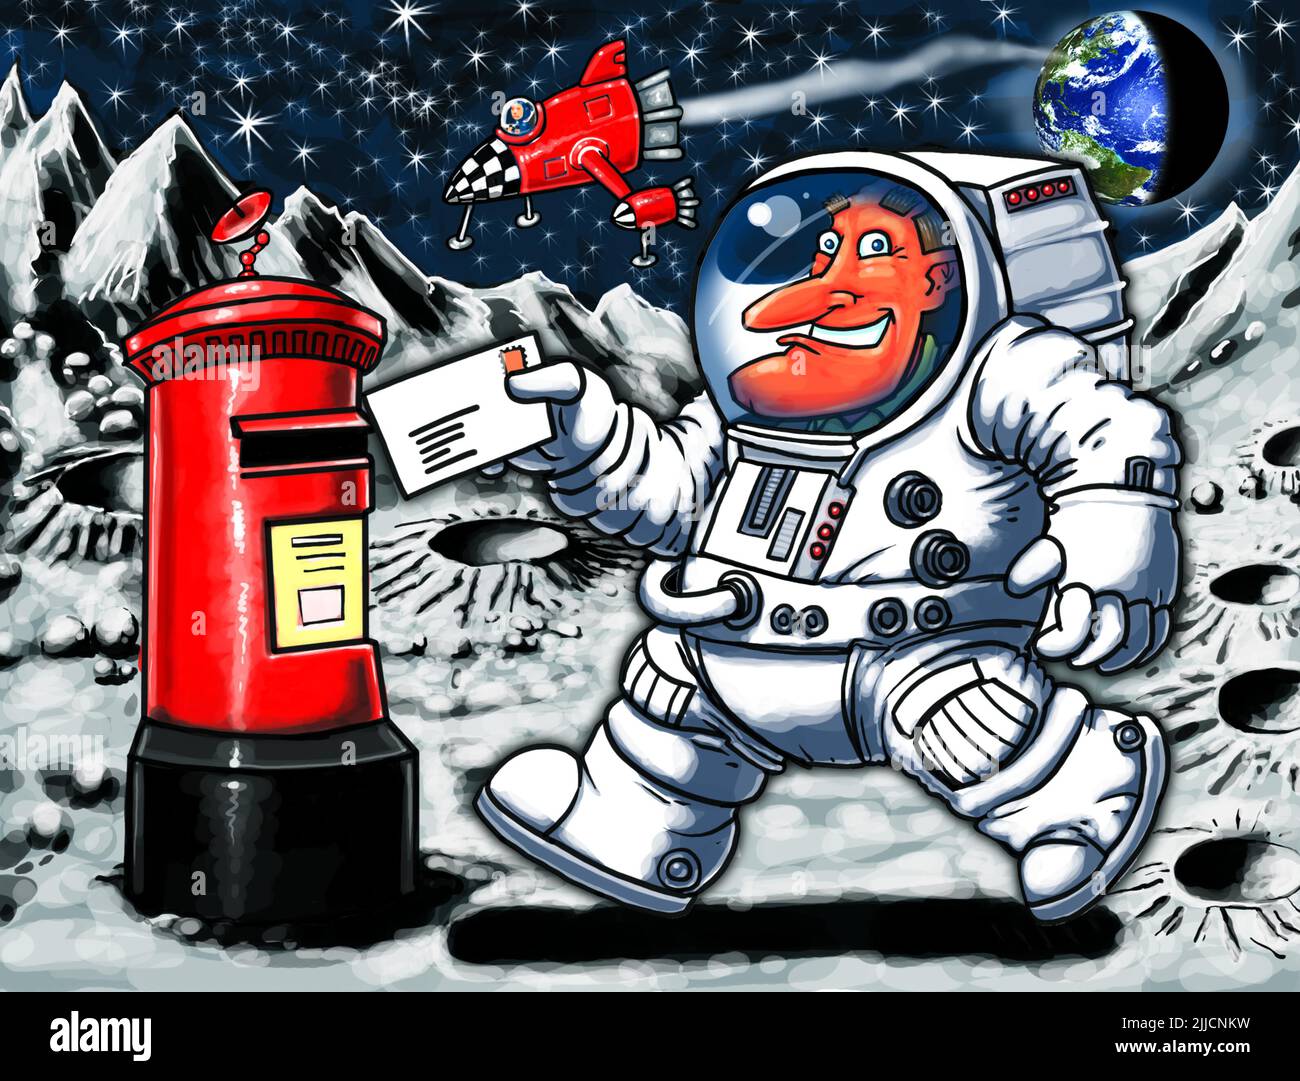 Arte cómico de dibujos animados, de un hombre que fija una carta en una caja de correo real en la luna, ilustrando los coleccionables postales del espacio, FDC, o filatelia extrema del correo. Foto de stock